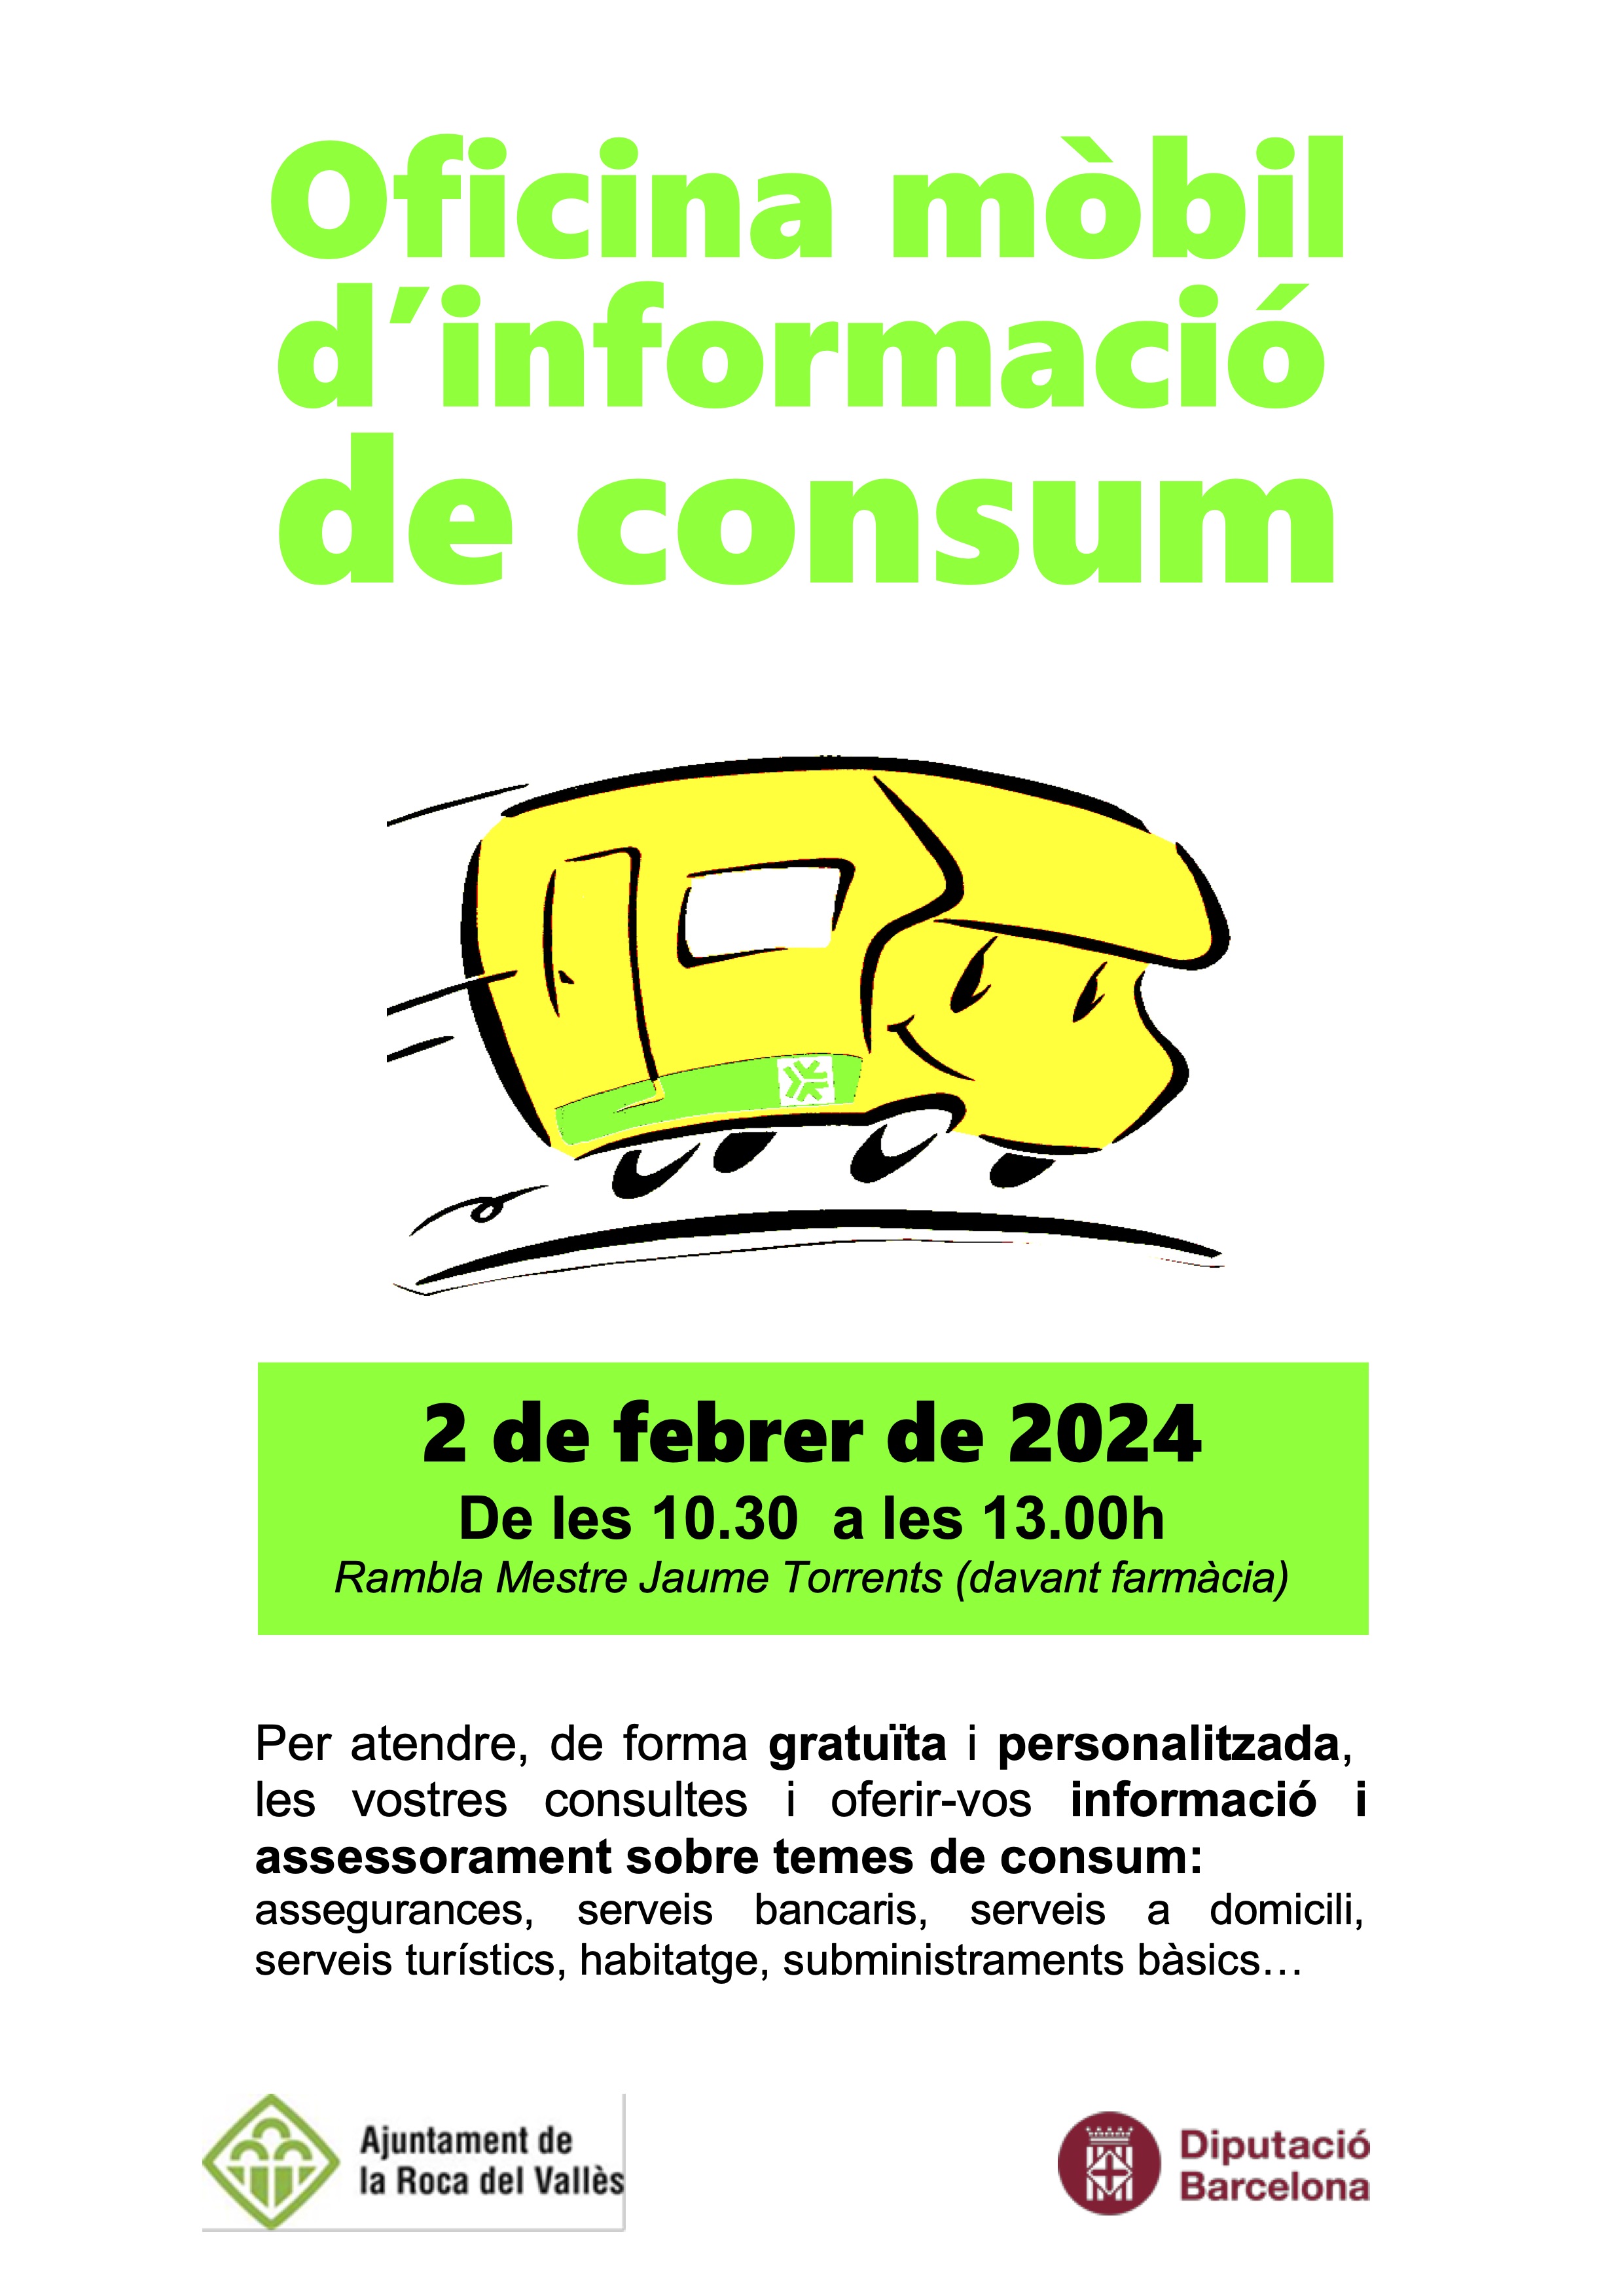 L'Oficina Mòbil d'Informació al Consumidor atendrà el 2 de febrer